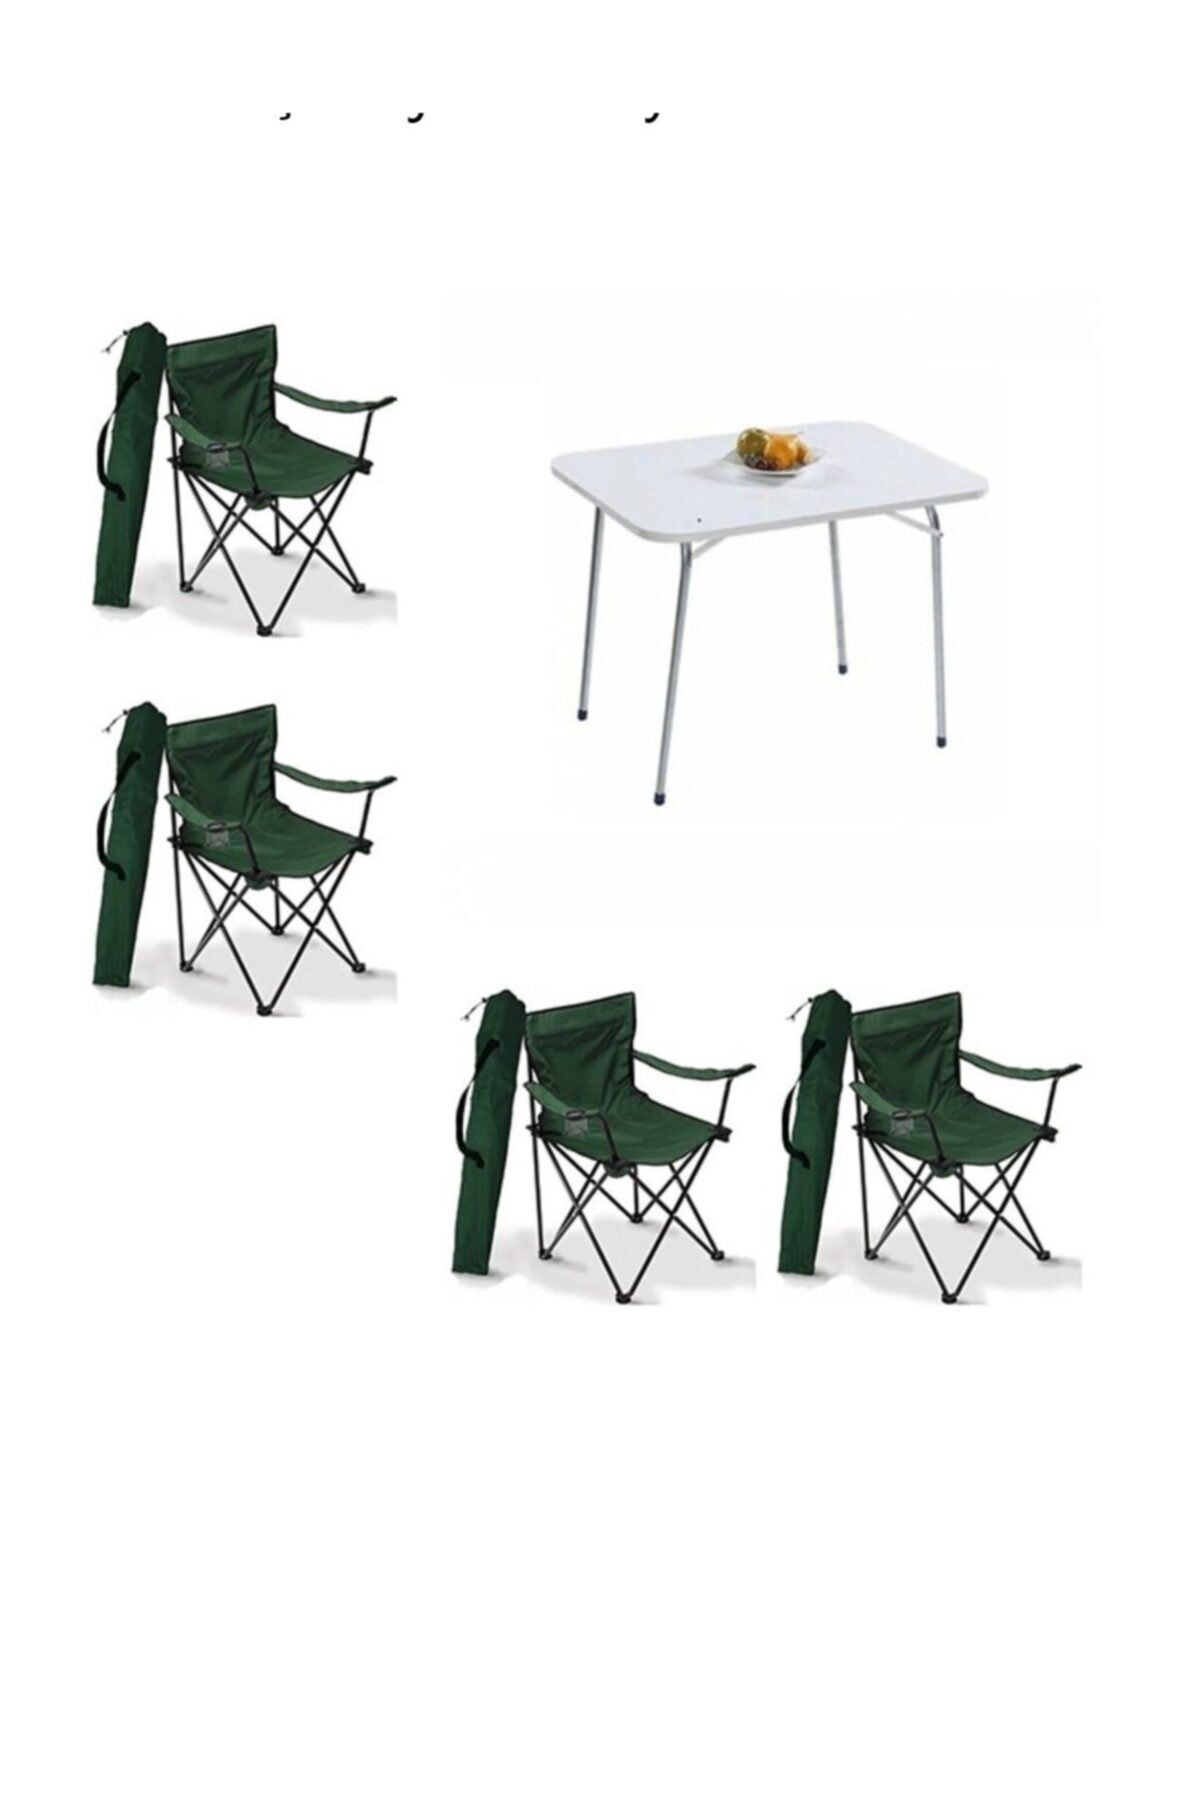 Mocca Style 60x80 Katlanır Beyaz Masa+ 4 Adet Yeşil Rejisör Sandalyesi Katlanır, Sandalye Piknik Plaj Sandalyesi